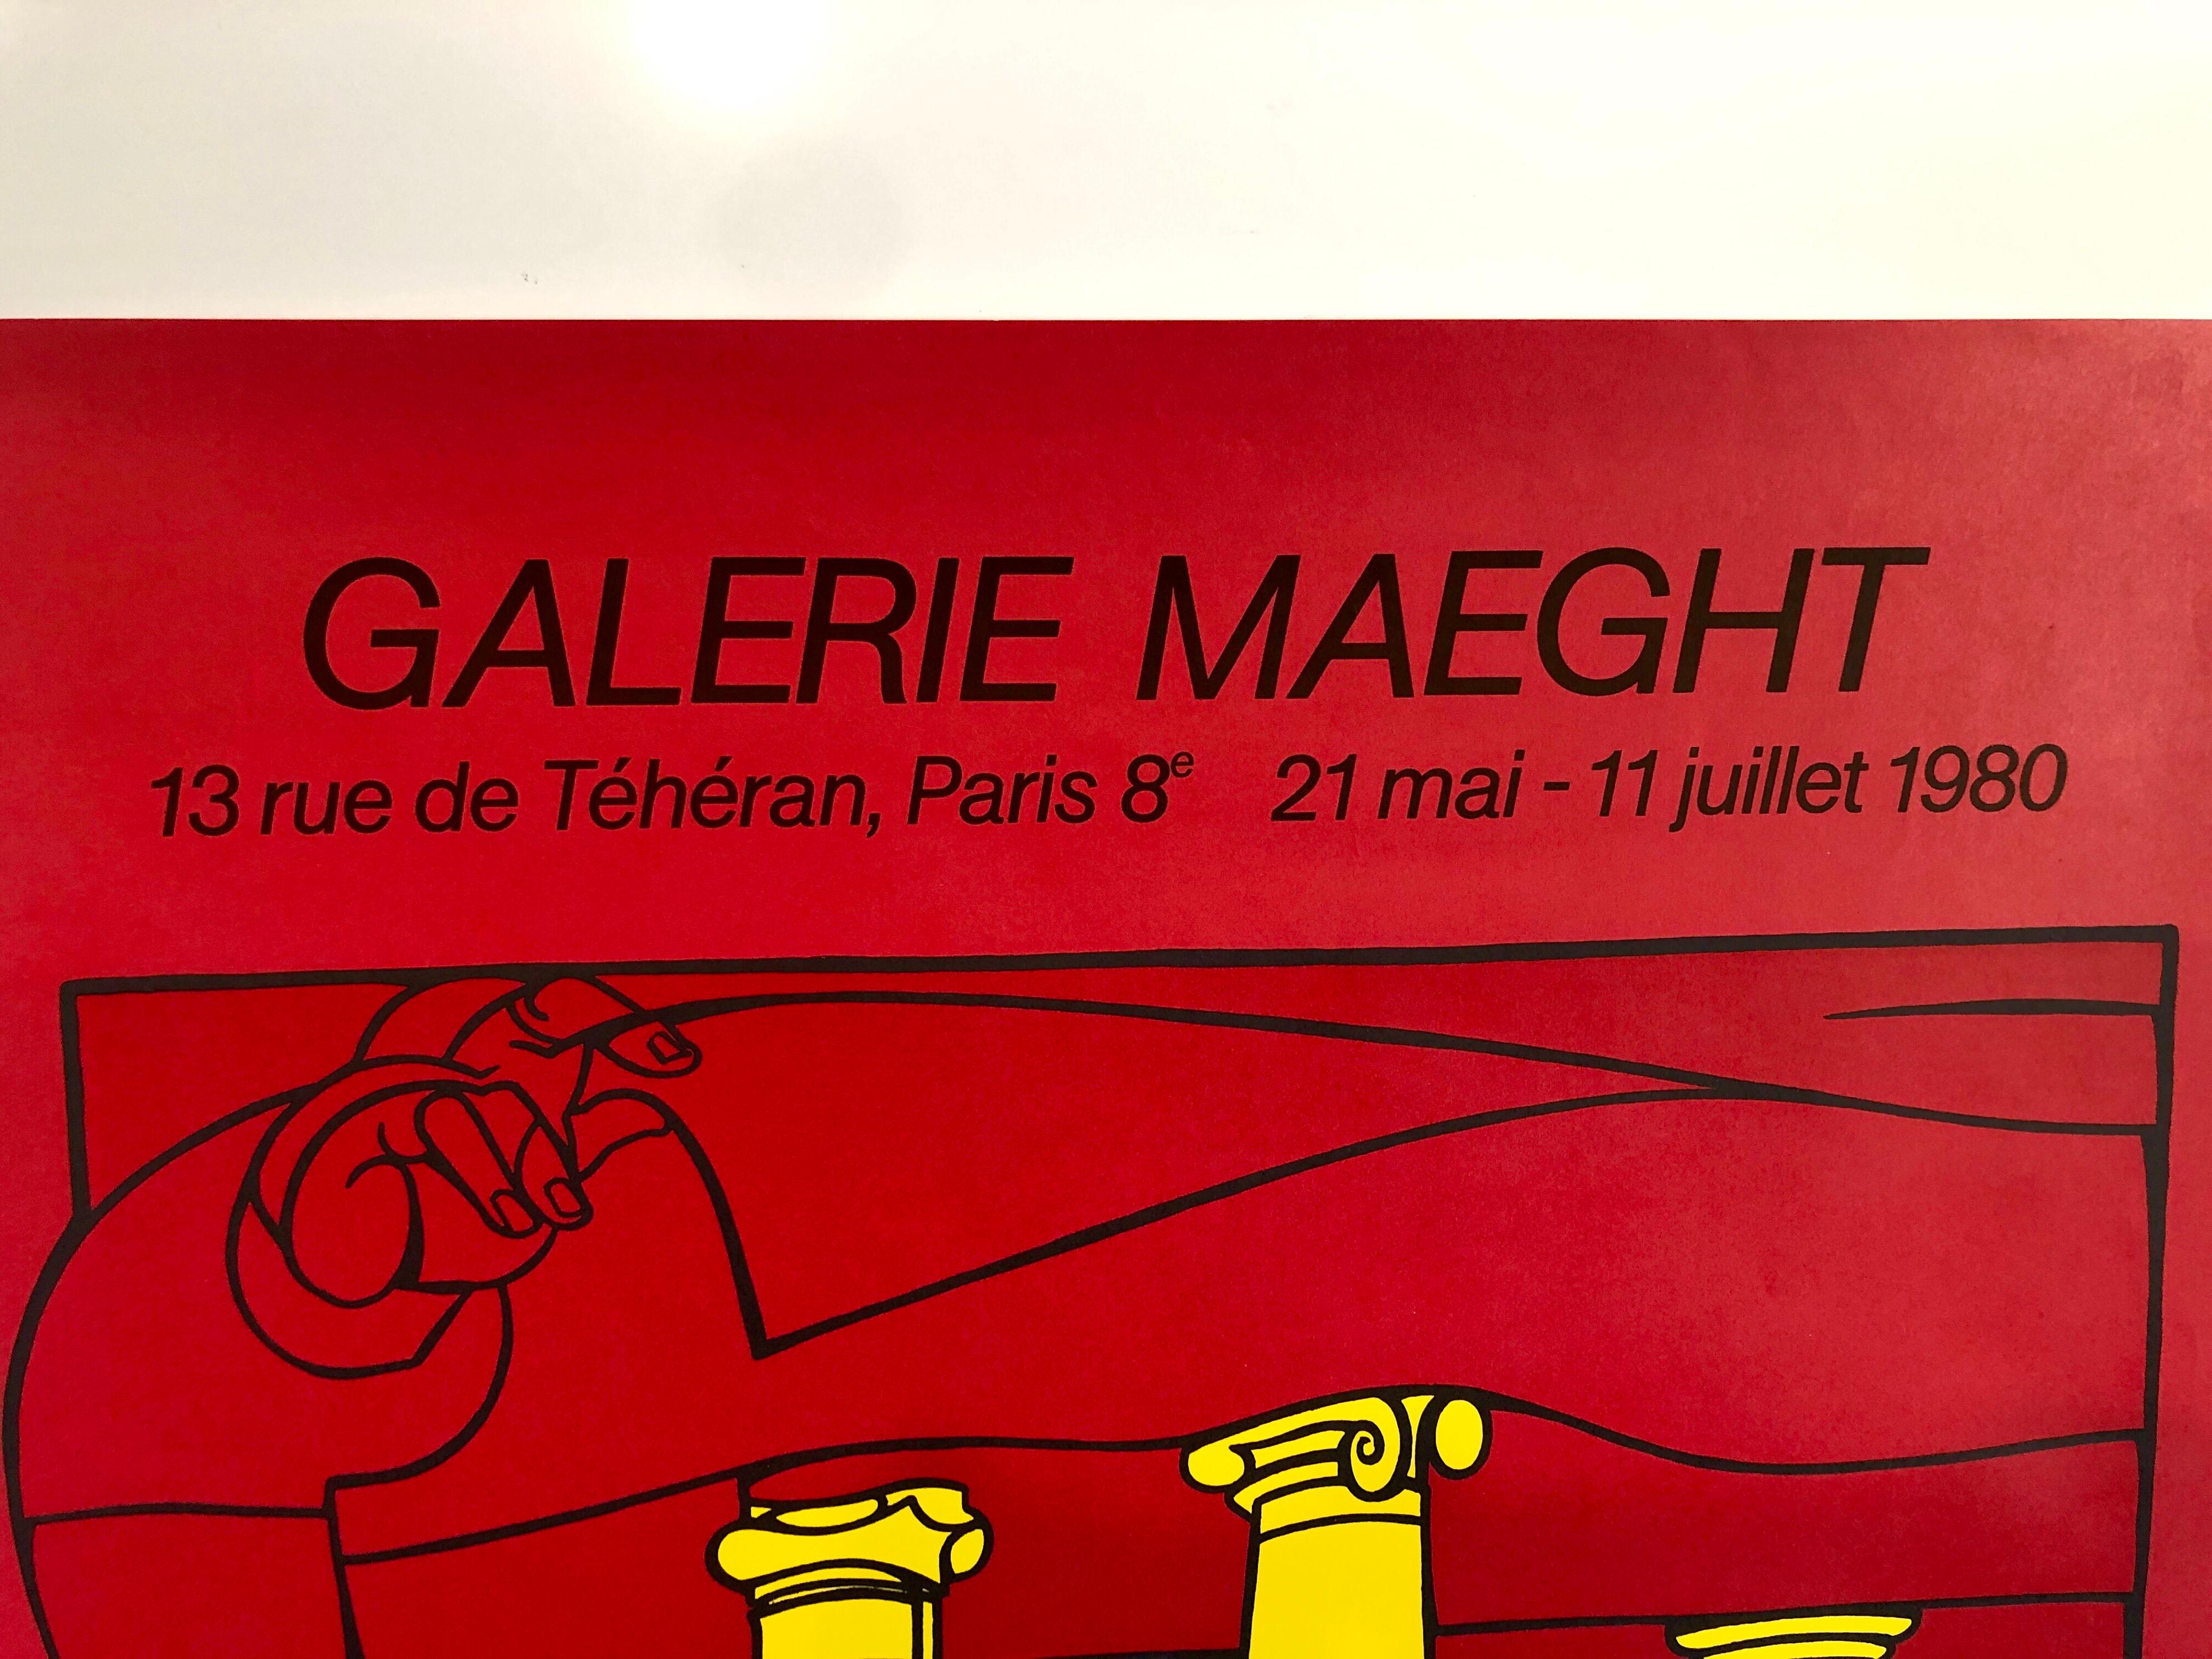 Vintage Gallery Ausstellungsplakat. Leuchtendes, lebendiges Rot und kräftiges Gelb. 
Die Galerie Maeght ist eine Galerie für moderne Kunst in Paris, Frankreich, und Barcelona, Katalonien, Spanien. Die Galerie wurde 1936 in Cannes gegründet. Die